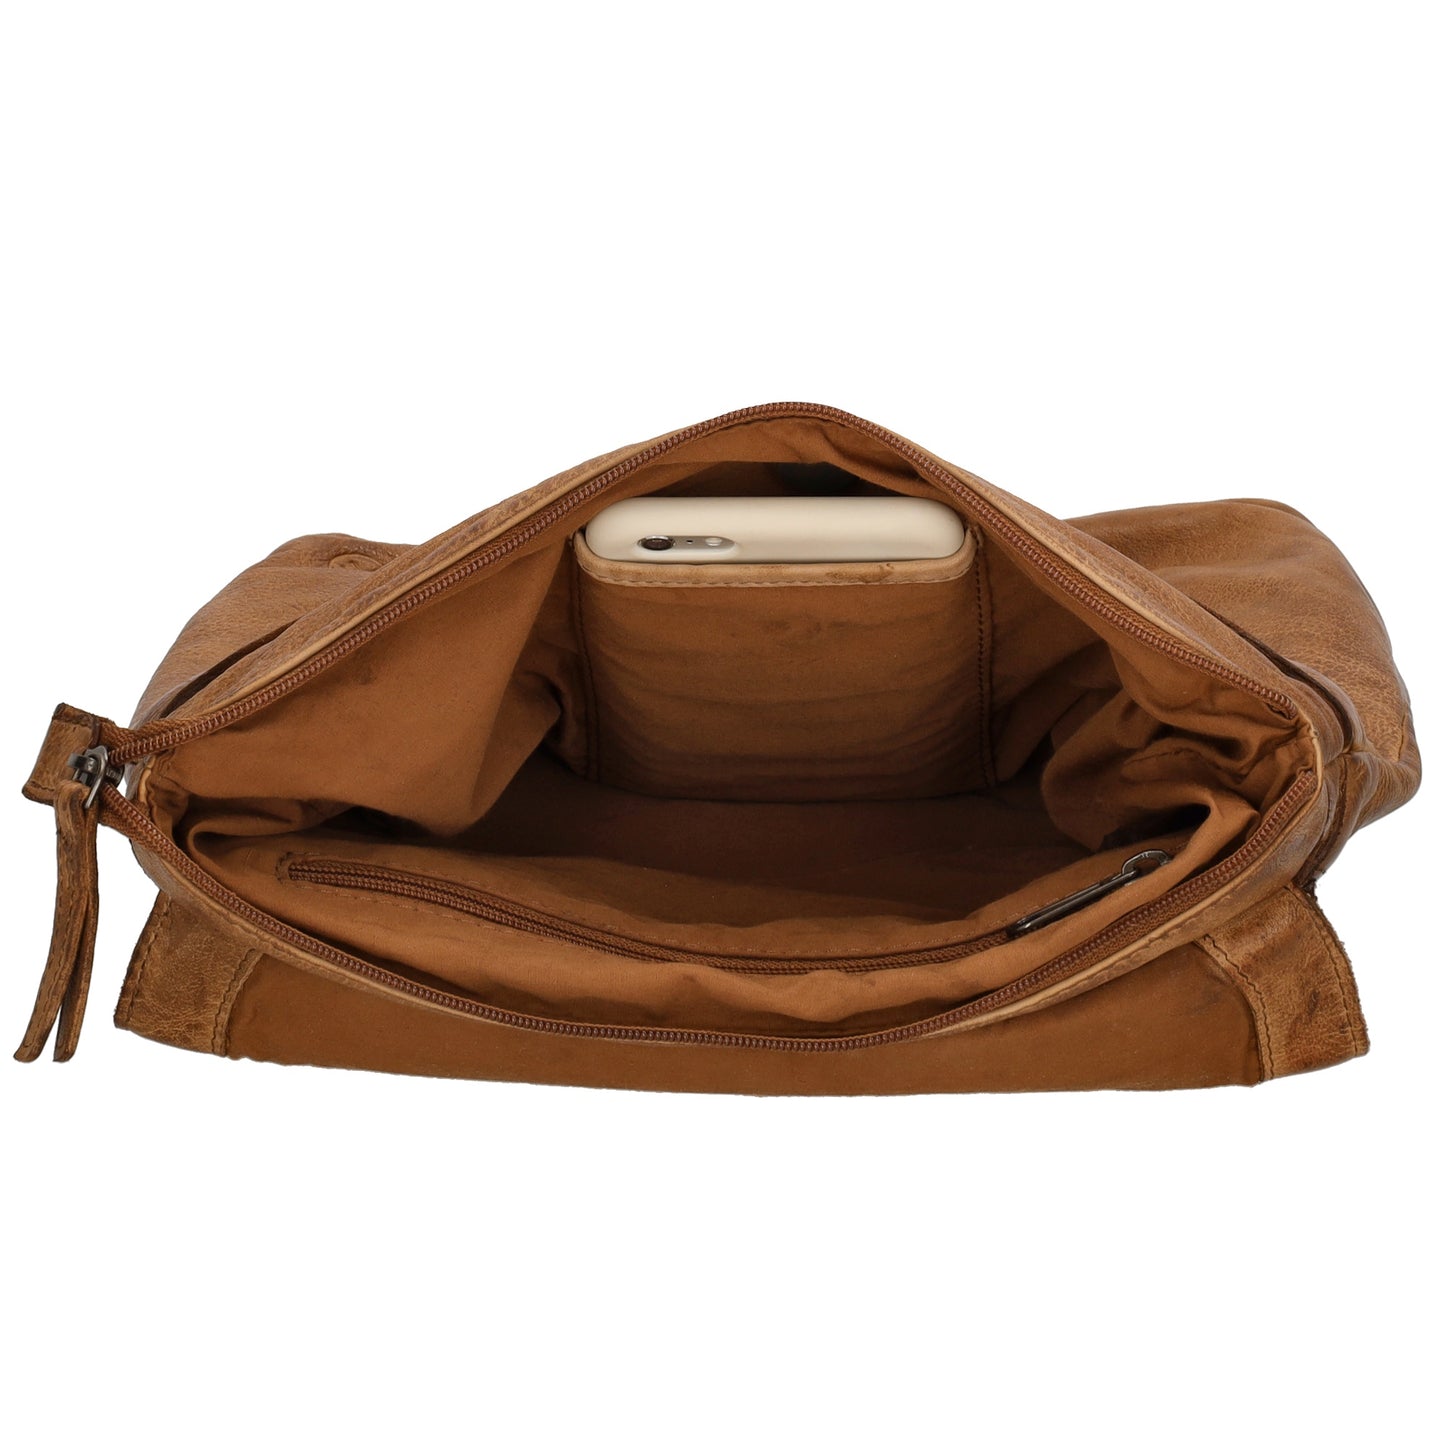 Rucksack| Tasche 33 x 34cm in Cognac aus Leder mit Überschlag